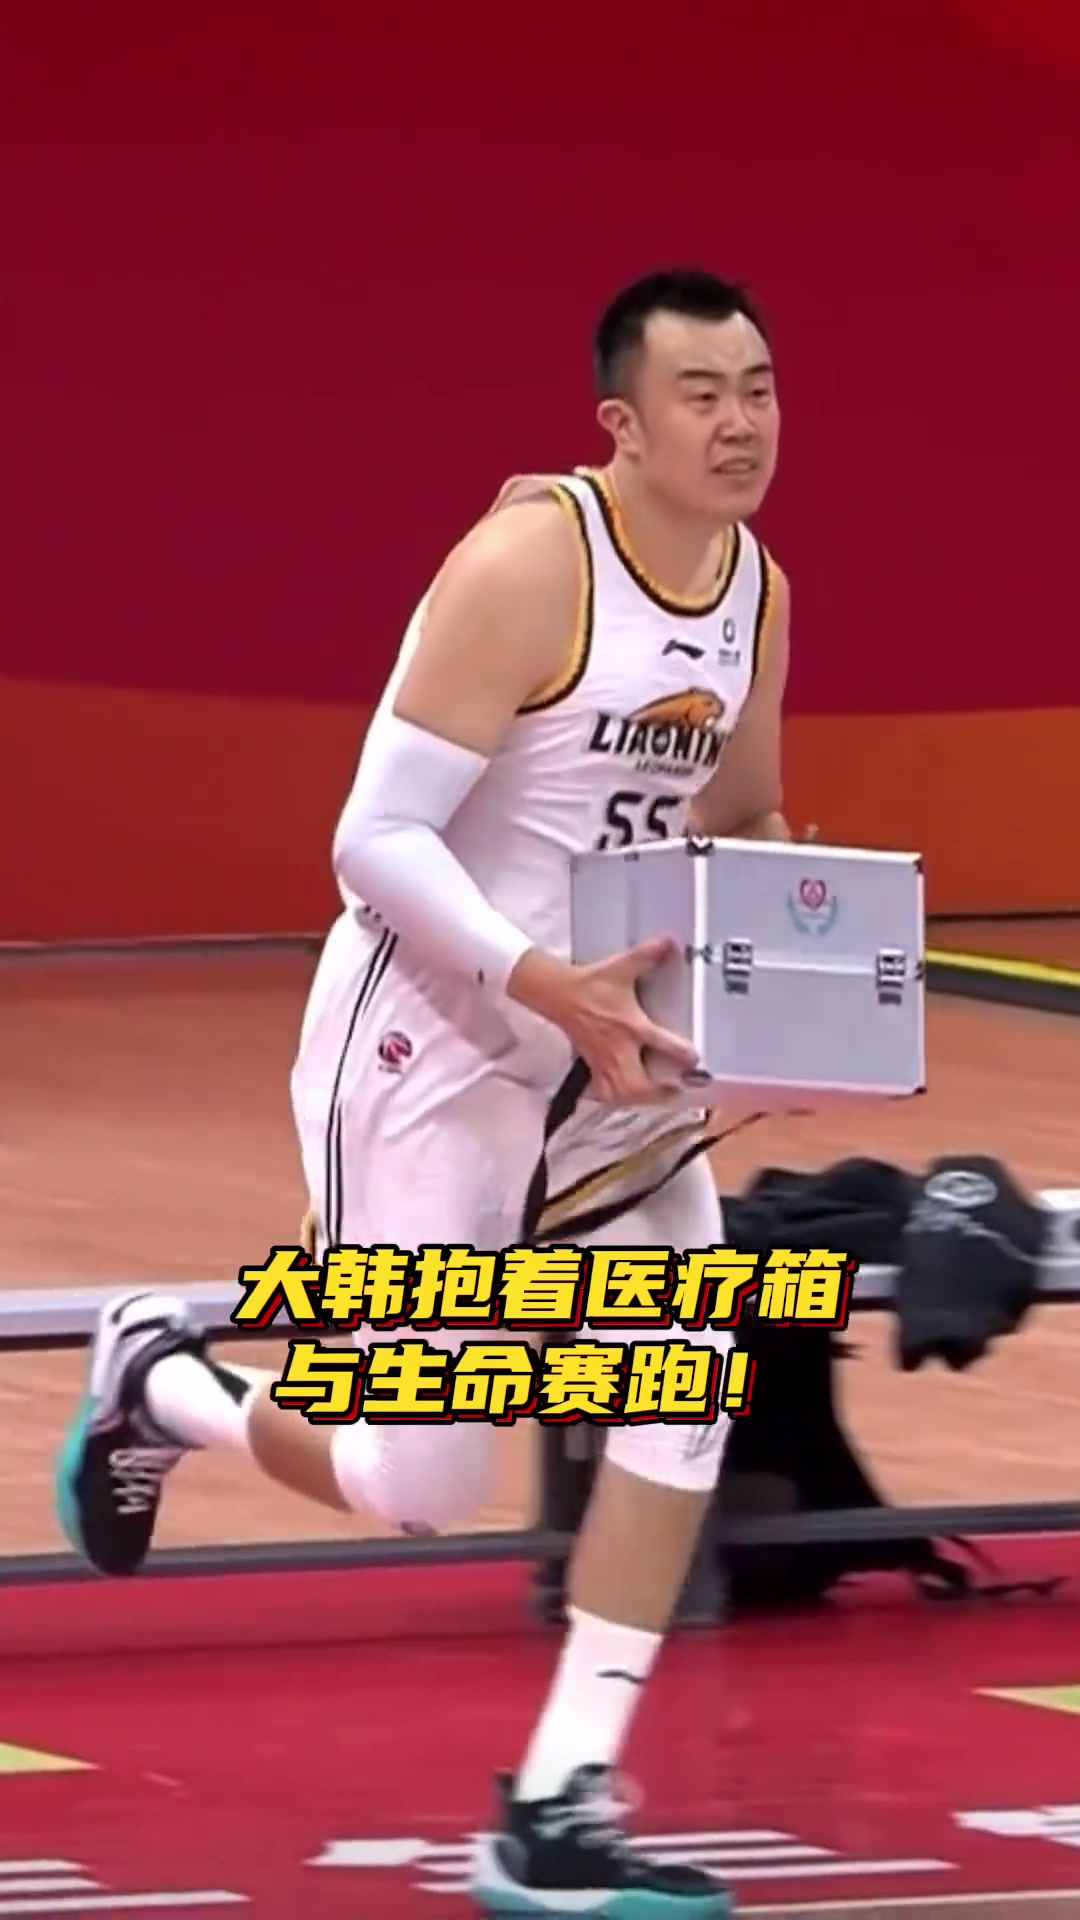 刘雁宇比赛中倒地后队医立刻冲进现场 韩德君抱医疗箱飞奔